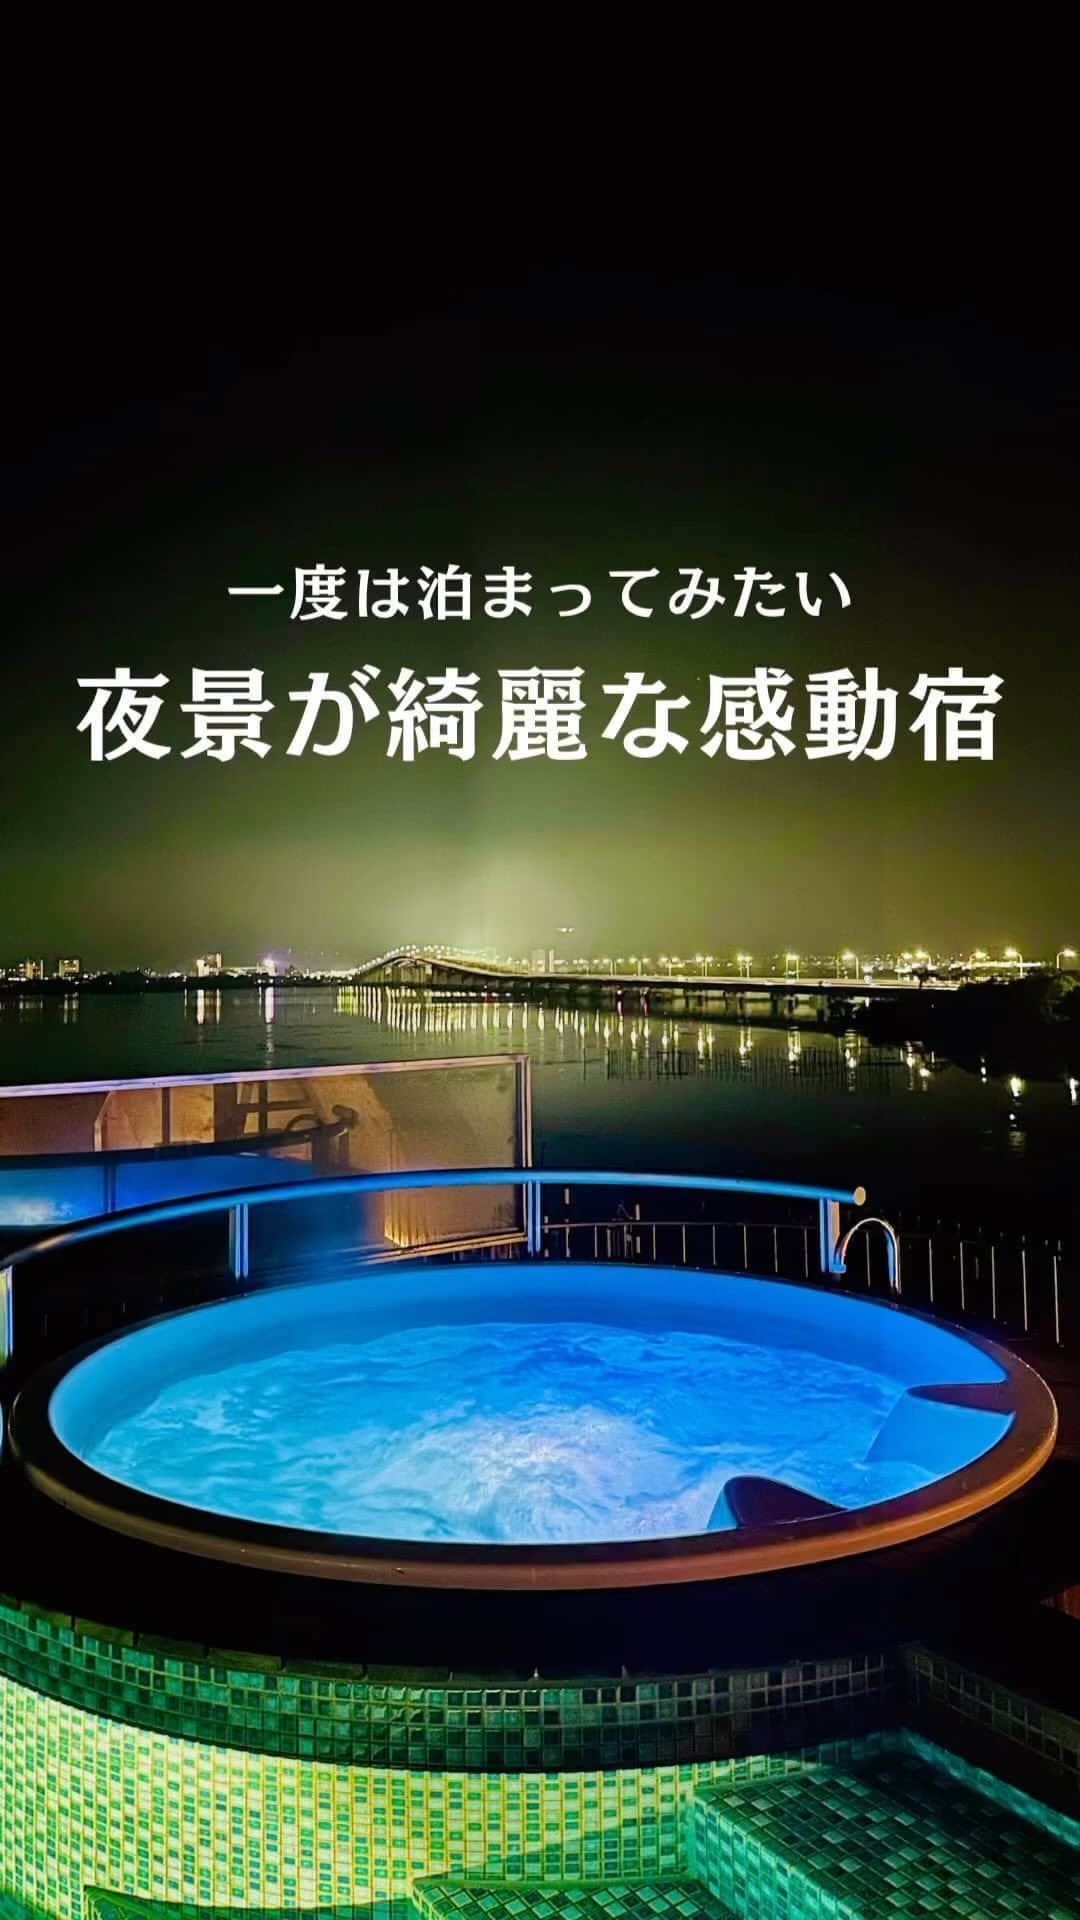 JAPAN TRIP 大人旅〜厳選の宿〜のインスタグラム：「. @yanmar_clubhouse_hotel 日本一の湖“琵琶湖”の東側 琵琶湖大橋のたもとに 2023年8月に開業したばかりの ヤンマーサンセットマリーナホテル。  ＝DATA＝＝＝＝＝＝＝＝＝＝＝＝＝＝＝＝＝ 📍YANMAR SUNSET MARINA HOTEL @yanmar_clubhouse_hotel  ■ 滋賀県守山市水保町1380 ■ 7室 ■ IN 15:00～／OUT 11:00  ■ 2名：84,000円～（夕朝食付） ※目安料金です。料金は施設に確認ください。 ＝＝＝＝＝＝＝＝＝＝＝＝＝＝＝＝＝＝＝＝＝  🔸大人のリゾート 🔸全室テラス付き 🔸ハンモック 🔸レイクビュー 🔸インフィニティプール 🔸ジャグジー 🔸サウナ 🔸バーラウンジ 🔸子供可 🔸ペット不可  とにかく外観からめちゃくちゃお洒落。  全7室すべてにテラスとハンモックを完備。 琵琶湖の眺望を満喫しながら現実逃避できます。  おすすめは このホテルに２部屋しかないスイートルーム。  扉を開けると 開放的な空間が目の前に広がっていました。  広さは、なんと120平米以上。  ３階に用意された インフィニティプールとジャグジーは 宿泊者なら滞在中は自由に利用できます。 サウナとバーラウンジも併設。  夜のディナーは フルオープンスタイルのカウンターに座って 料理ができるまでを見ながら頂く “熟成肉”を中心にしたコース料理。  どれを食べても感動レベルの美味しさ。 最高のディナータイムでした。  皆さんにも 是非泊まってみてほしいと思える宿でした。  ＝＝＝＝＝＝＝＝＝＝＝＝＝＝＝＝＝＝＝＝＝ 〜お詫び🙇‍♂️〜 本日朝にポストしましたが… 諸事情により削除したので…再投稿です。 【いいね】＆【保存】＆【コメント】を頂いた皆さん… 本当にすみません🙇‍♂️ 良かったらまたお願いできると…嬉しいです🤣 ＝＝＝＝＝＝＝＝＝＝＝＝＝＝＝＝＝＝＝＝＝  #滋賀ホテル #琵琶湖 #滋賀旅行 #レイクビュー #インフィニティプール  #大人旅jp #大人旅 #大人旅の宿 #国内旅行 #家族旅行 #ご褒美旅行 #贅沢旅行 #記念日旅行 #japantrip #japantravel」